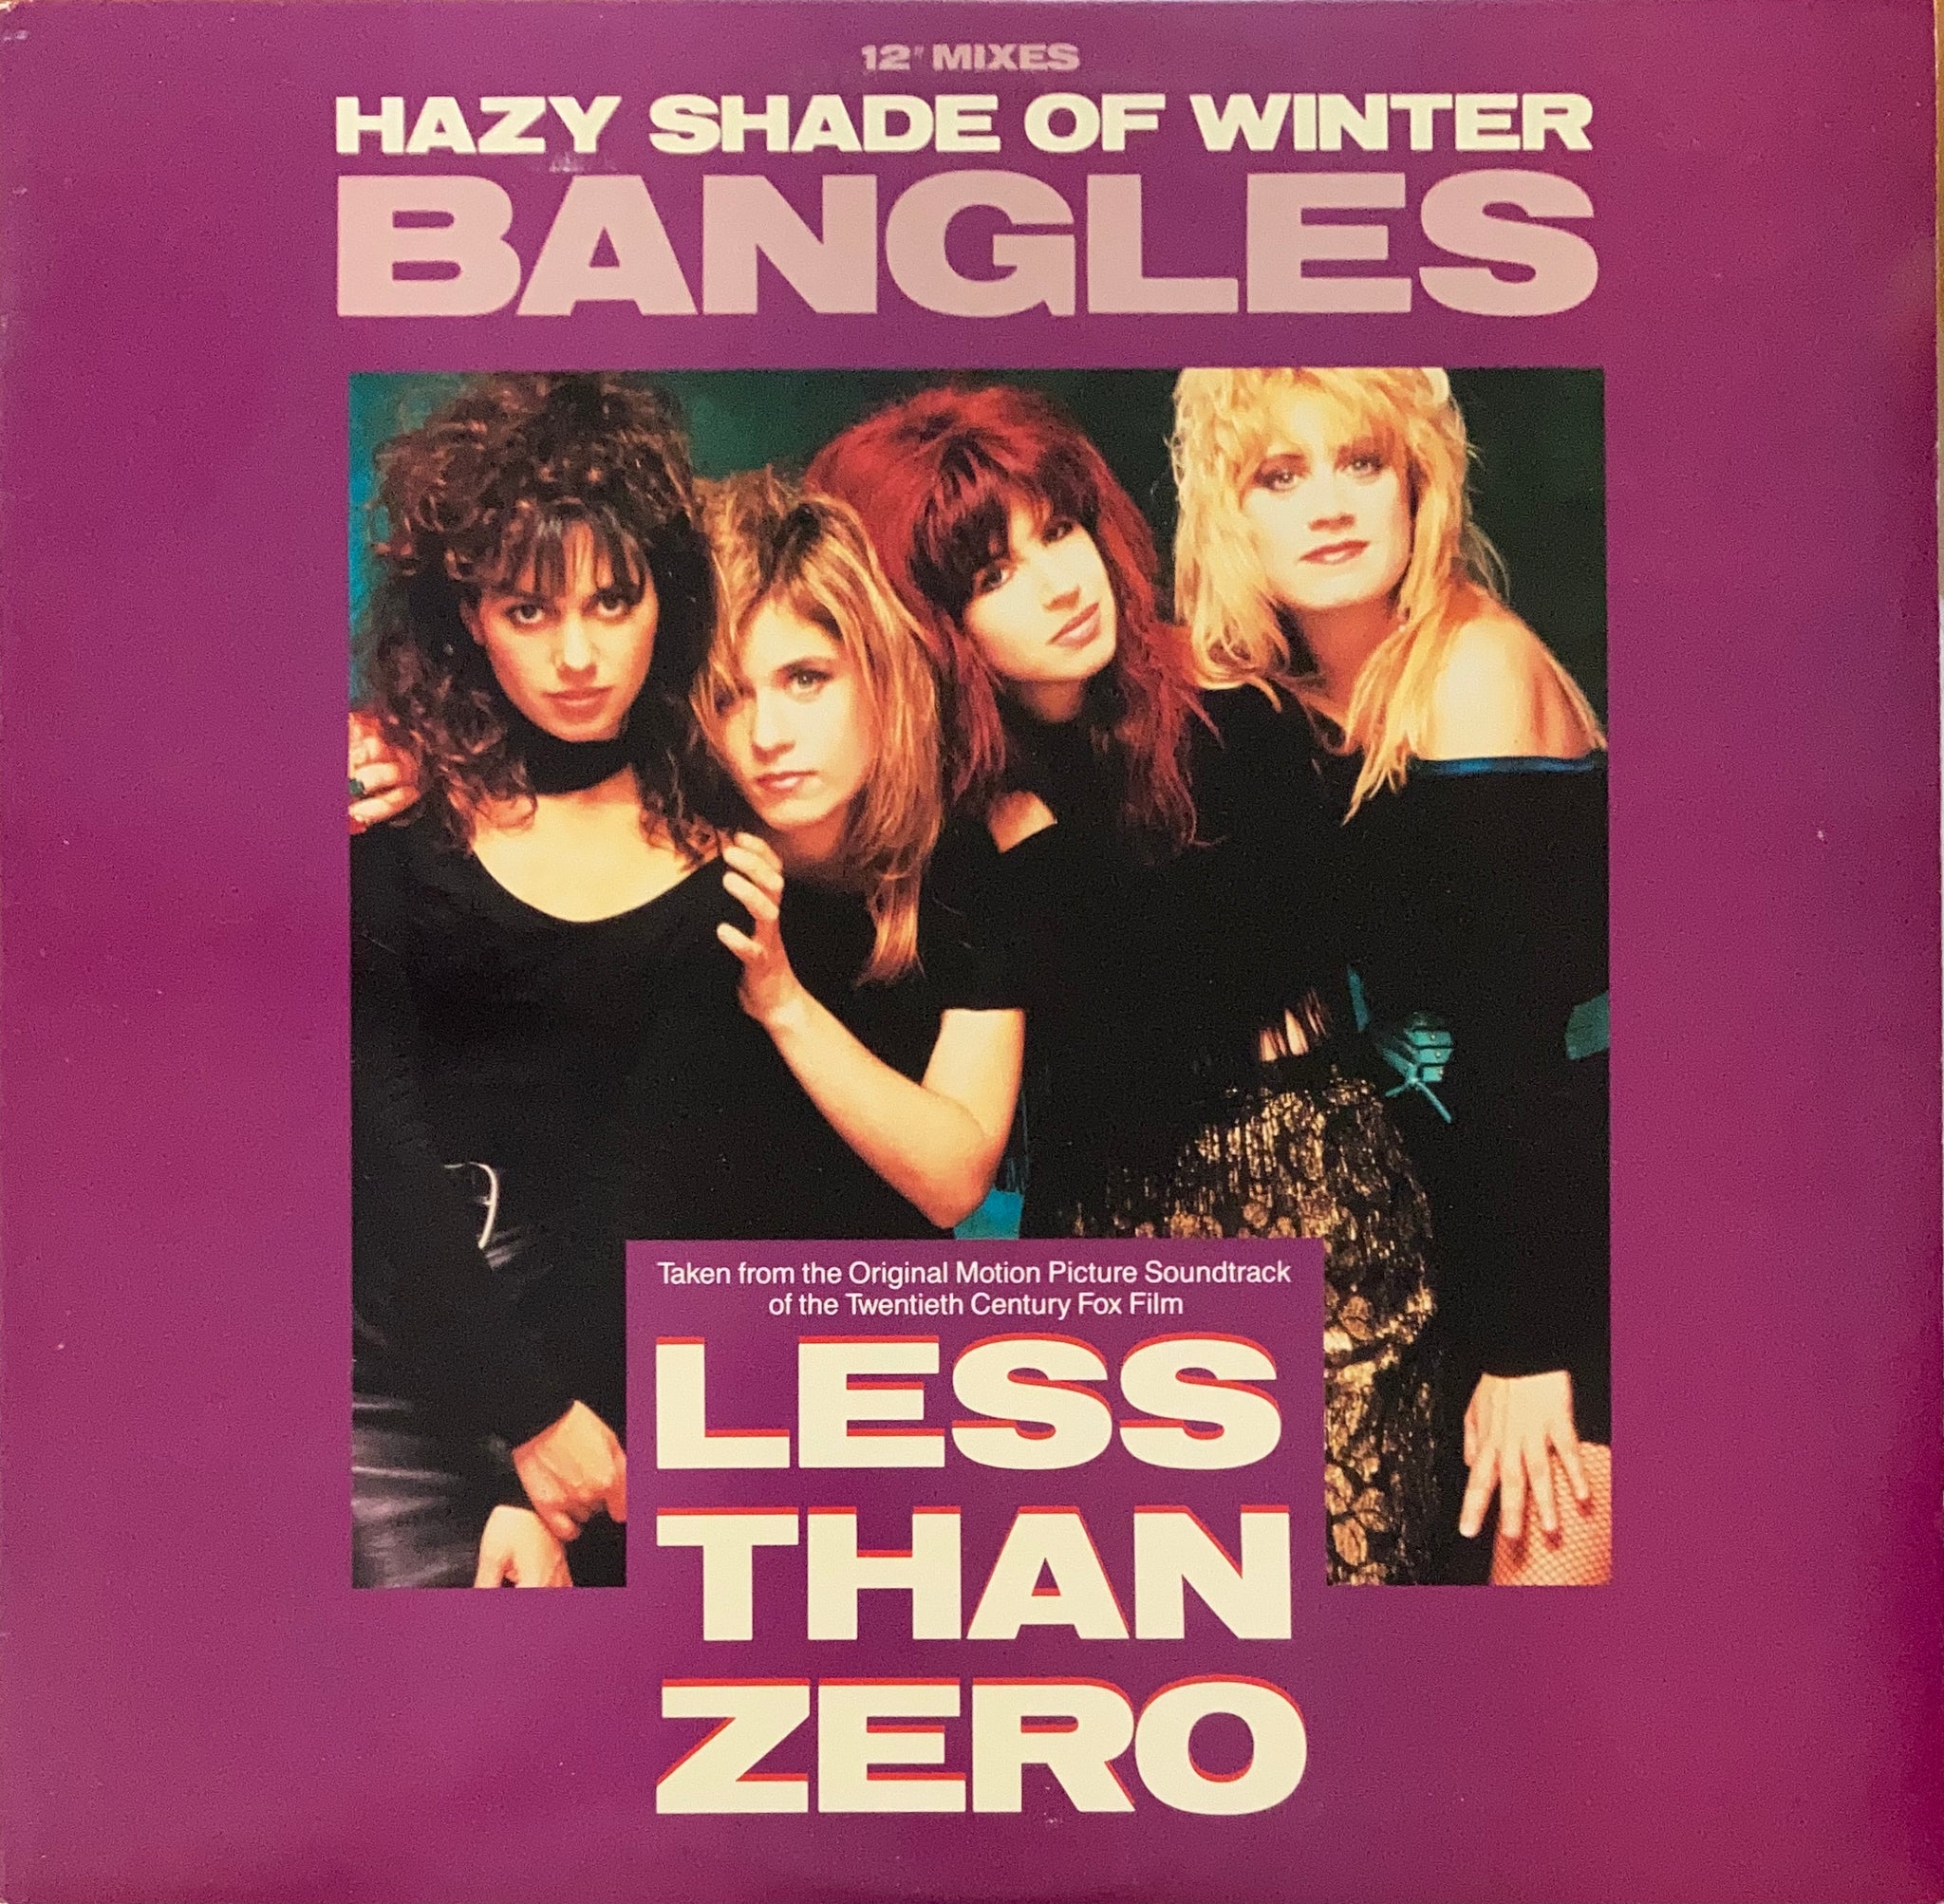 Bangles "Hazy Shade Of Winter" 12" Single (1987)